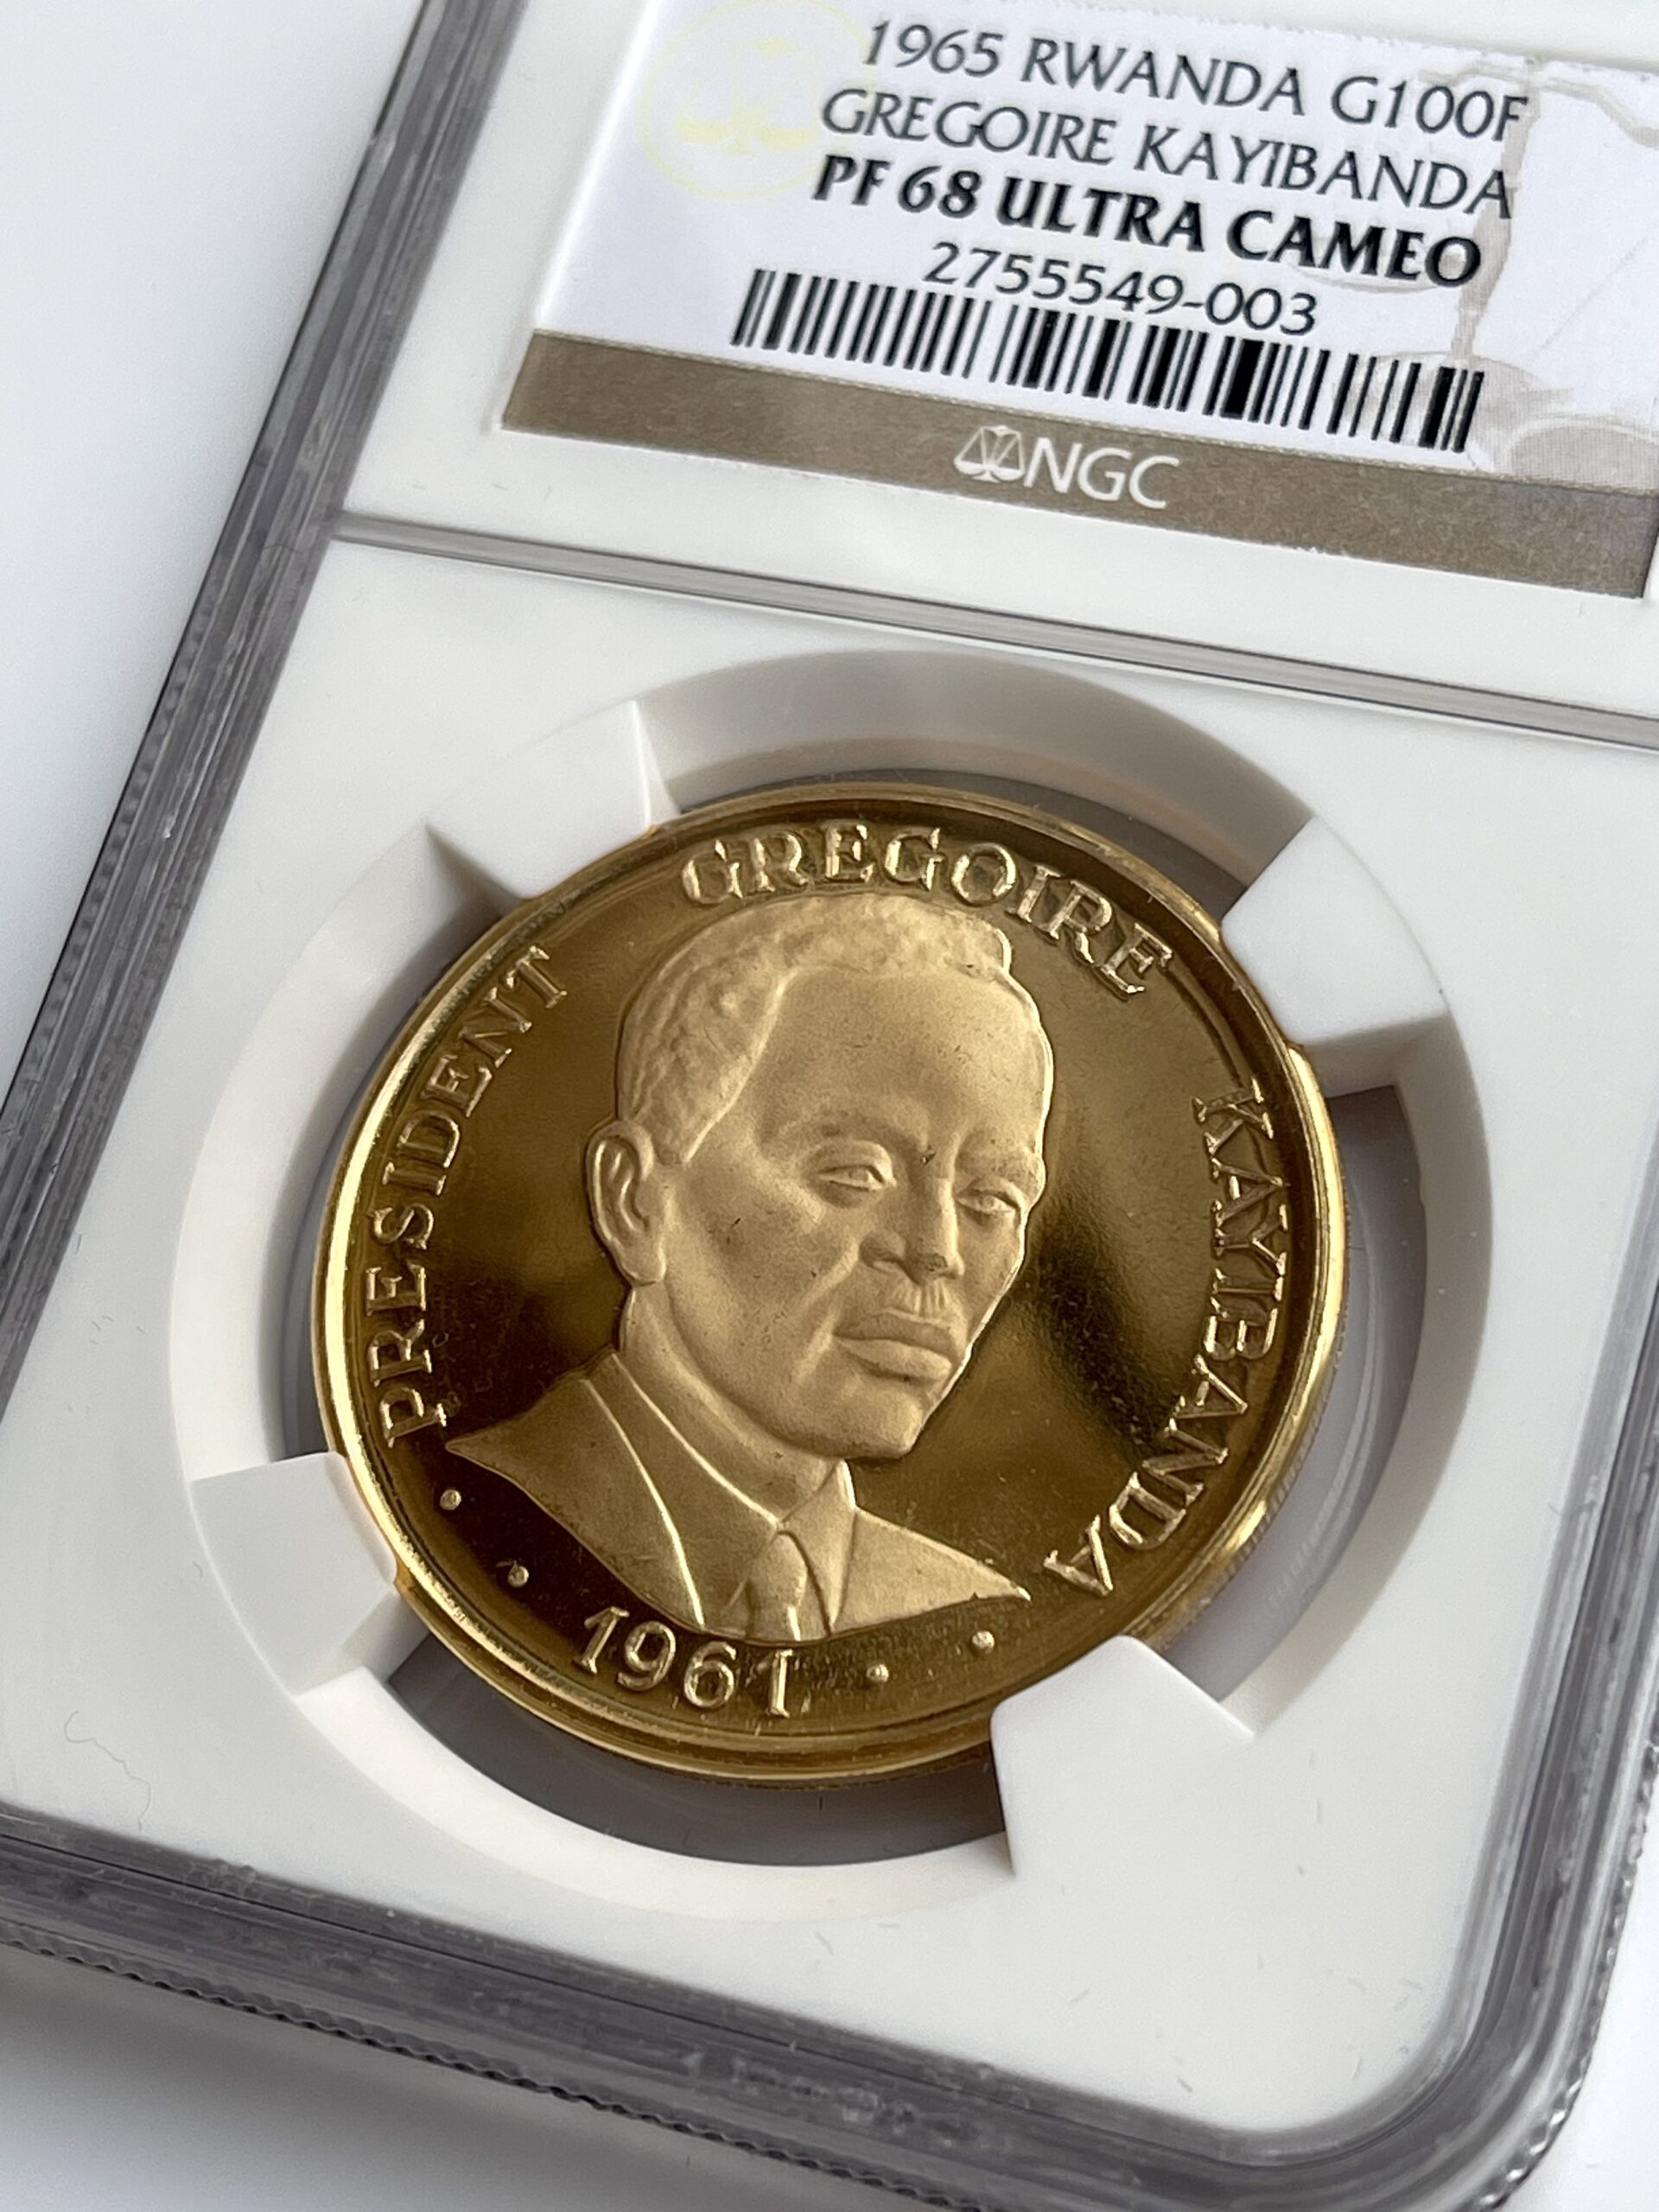 103016] Coin, Brazil, 300 Cruzeiros, 1972, MS, Brass, KM:Pr7